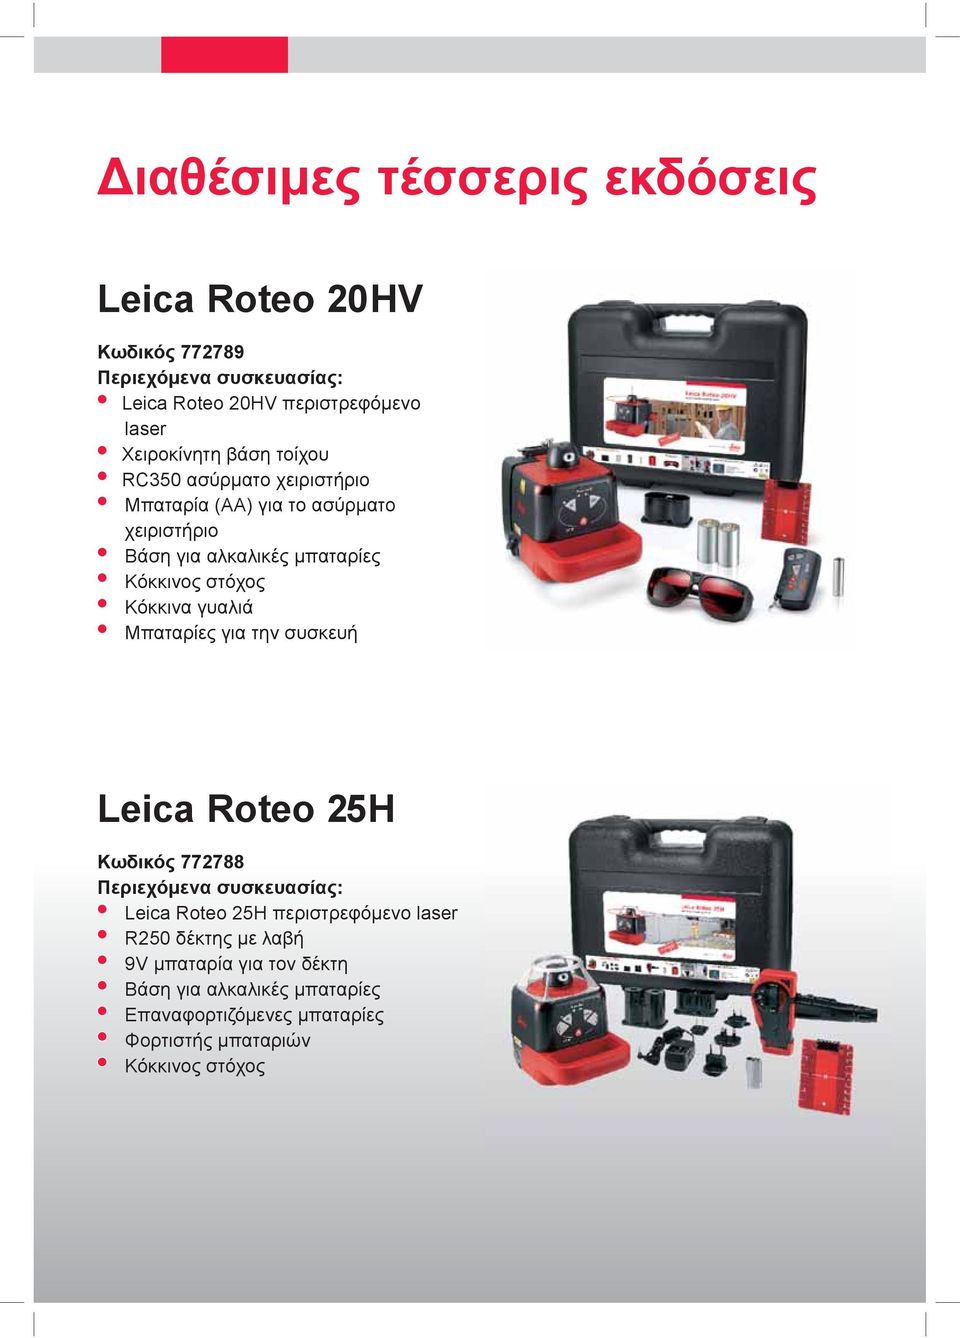 στόχος Κόκκινα γυαλιά Μπαταρίες για την συσκευή Leica Roteo 25H Κωδικός 772788 Περιεχόμενα συσκευασίας: Leica Roteo 25H